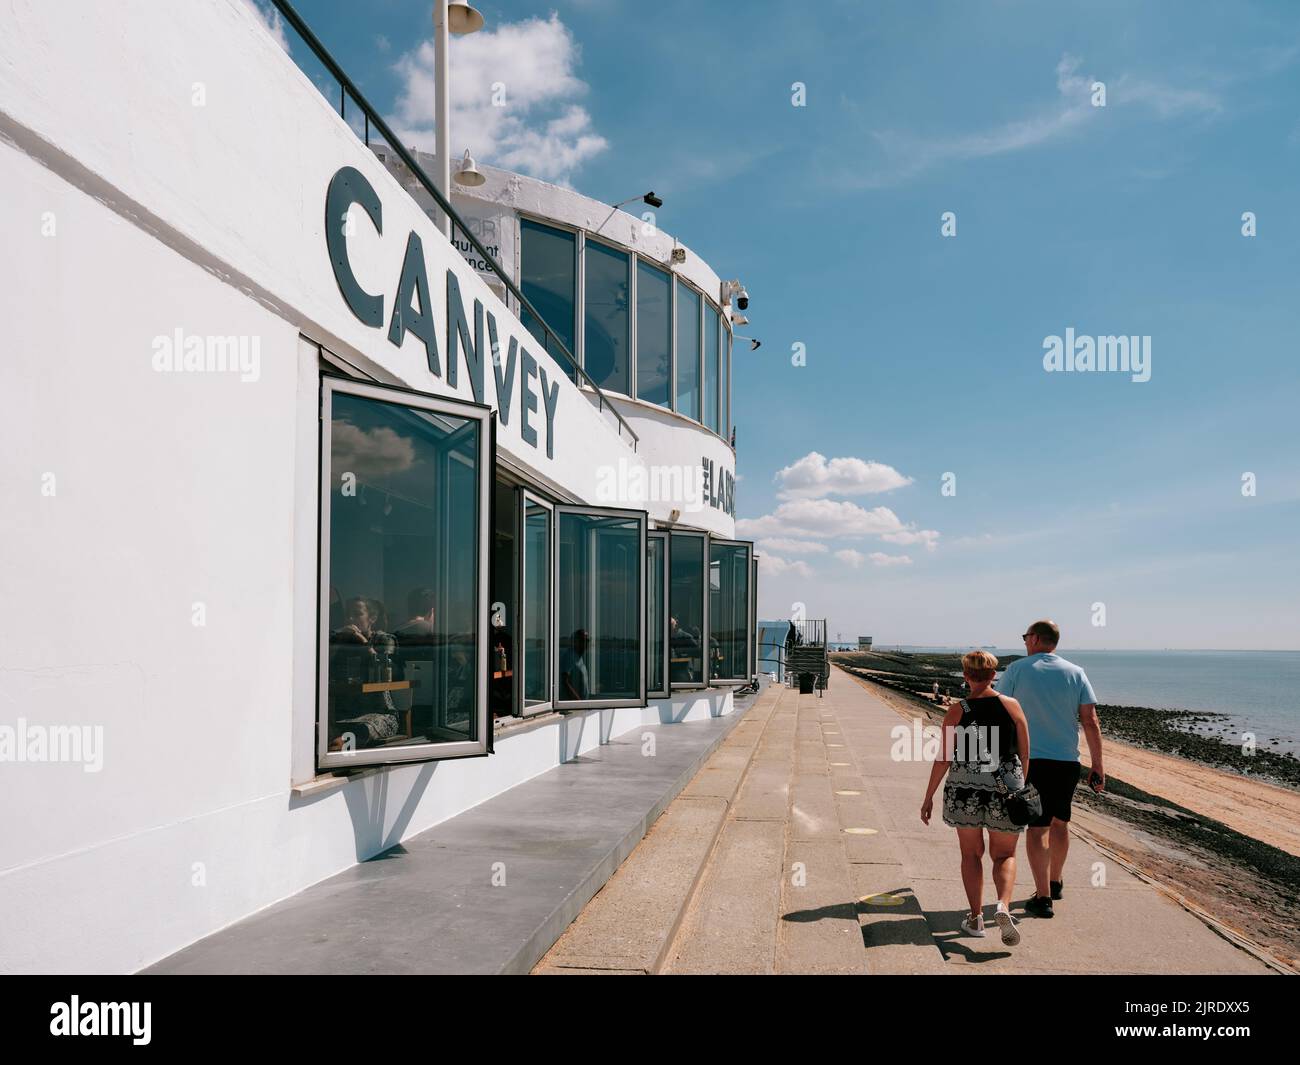 L'architecture moderne en béton de bord de mer du Labworth Cafe sur la côte à l'île de Canvey, l'estuaire de la Tamise, Essex, Angleterre, Royaume-Uni - la vie d'été Banque D'Images